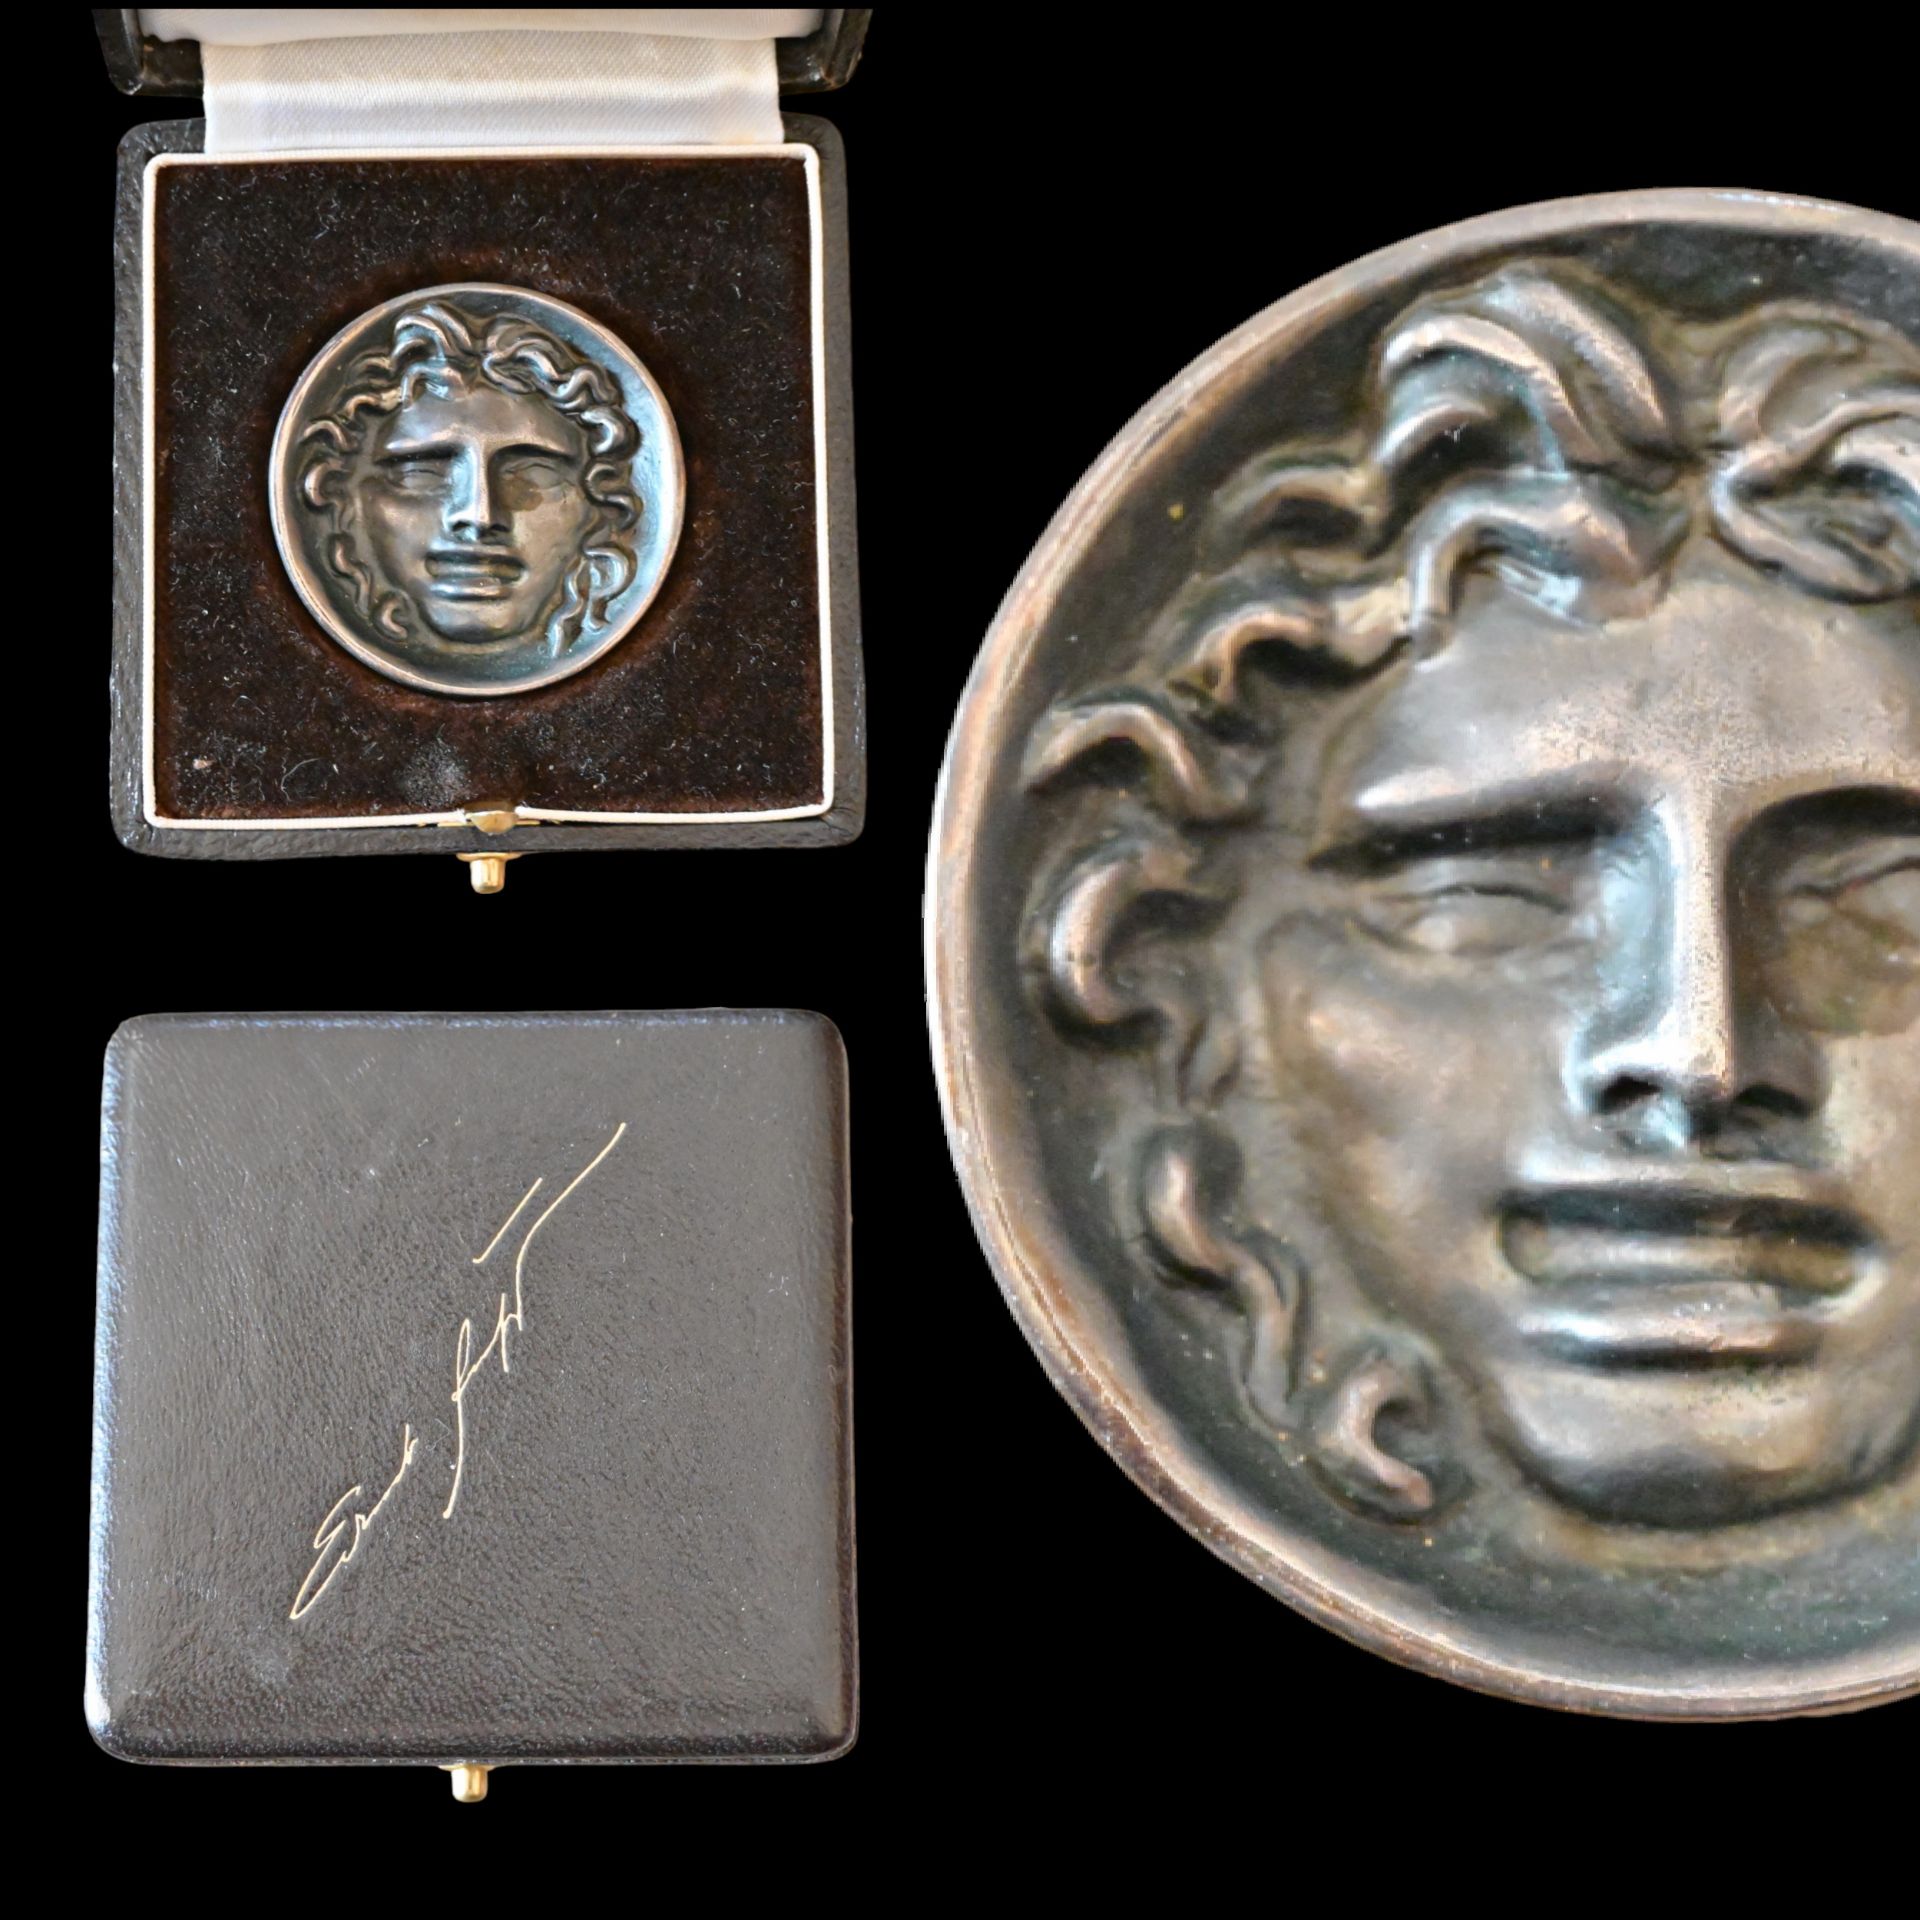 _Ernst Fuchs (1930 Ð 2015) "Adonis" silver medal, original case, signature of the author, 20th C.